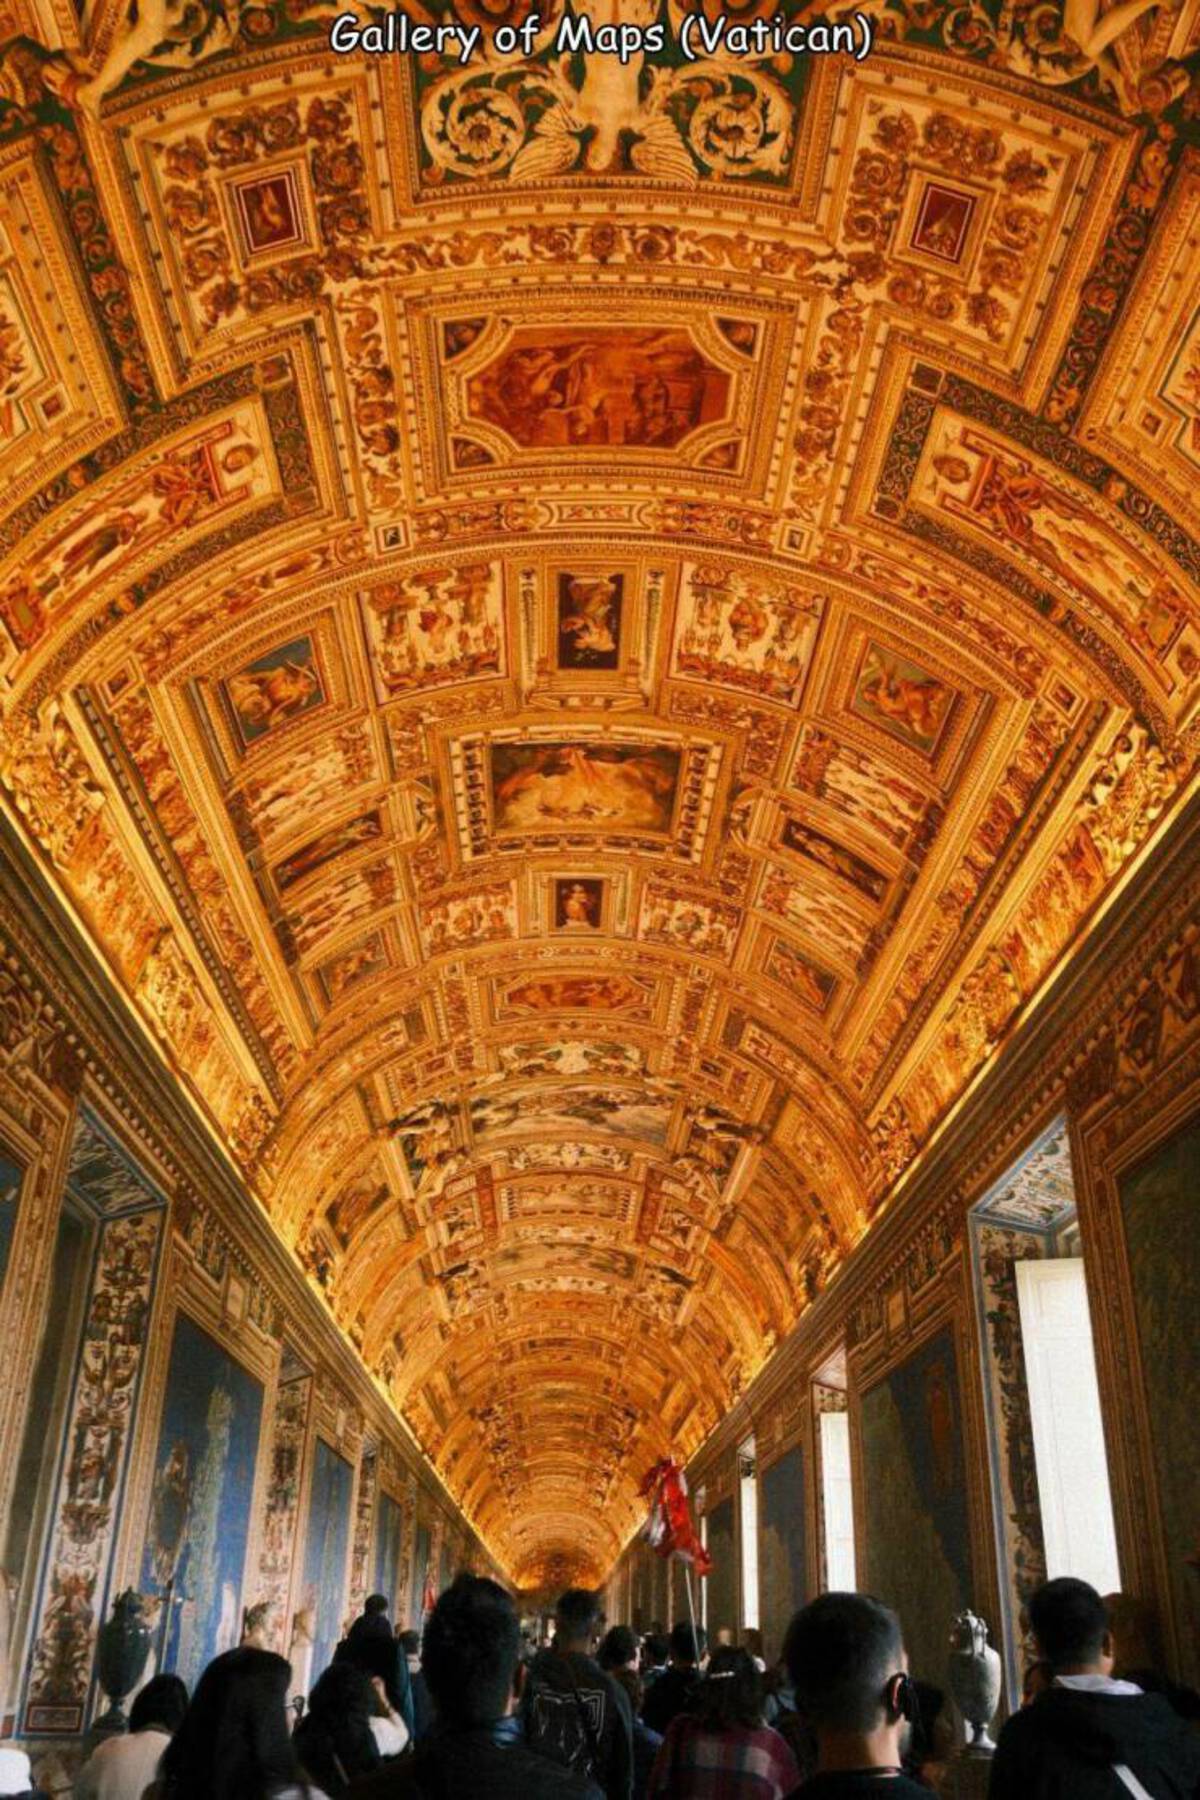 vatican museum - Gallery of Maps Vatican